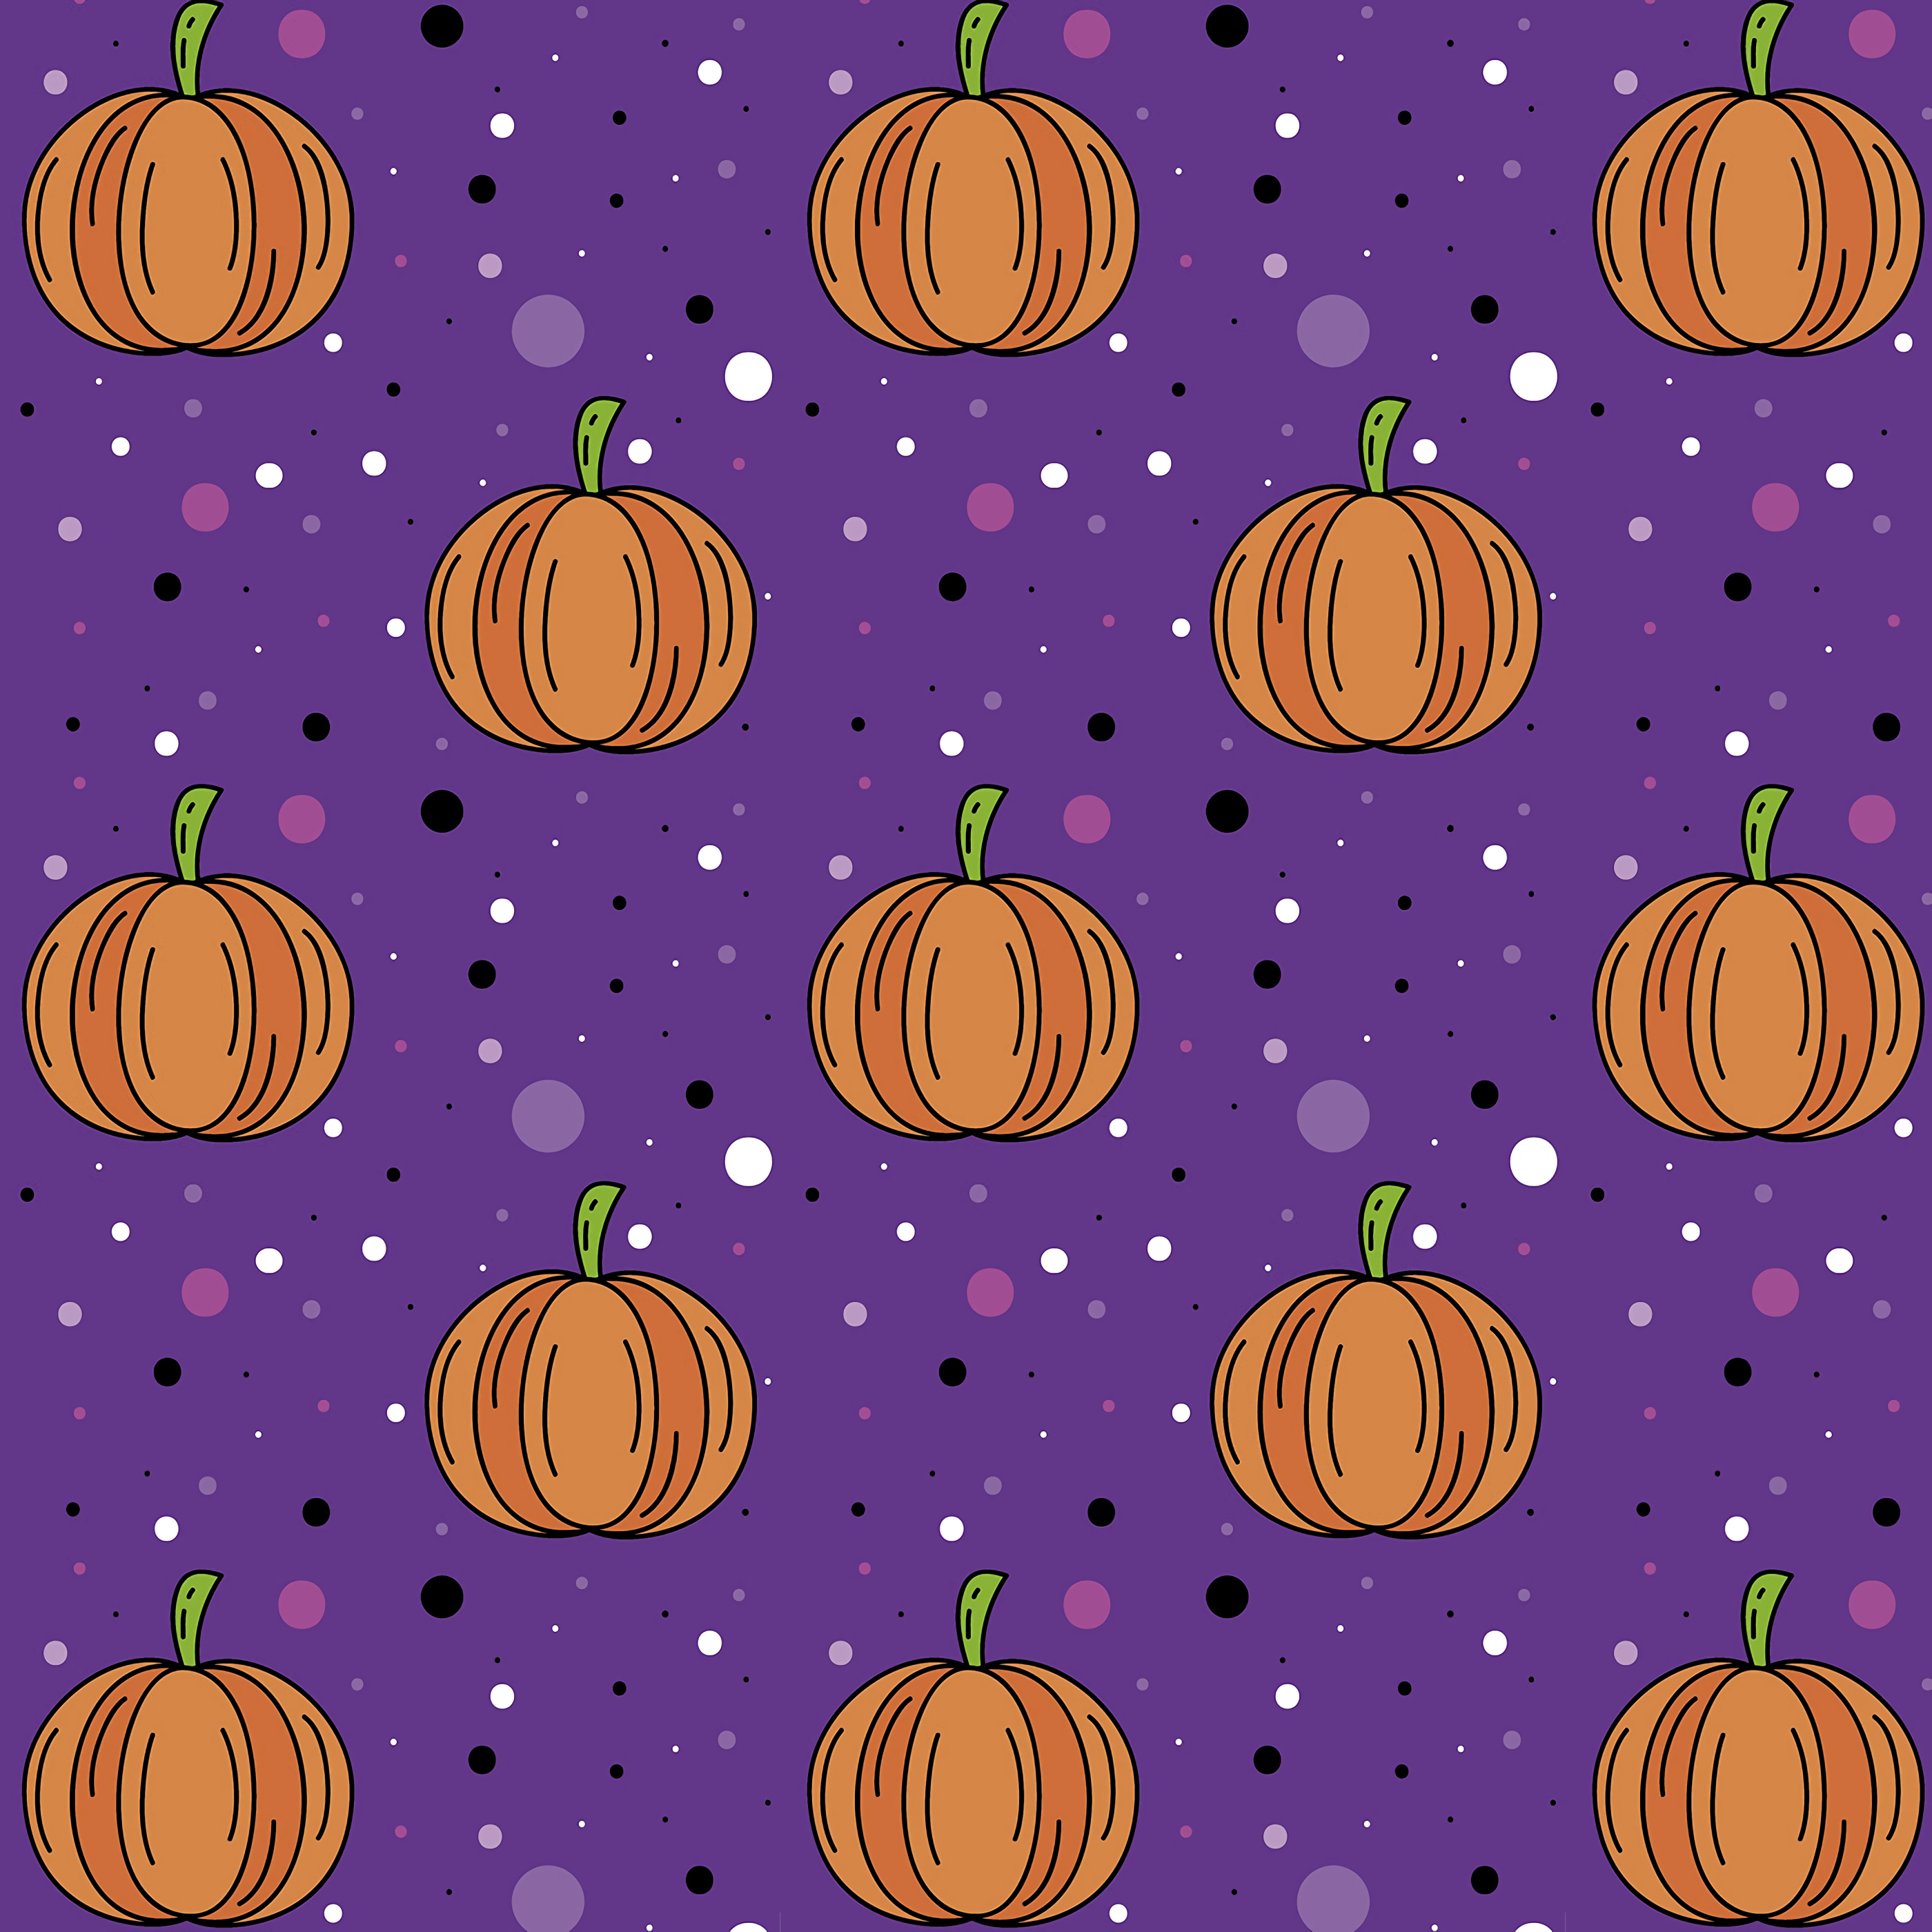 Best Pumpkin HD Wallpaper